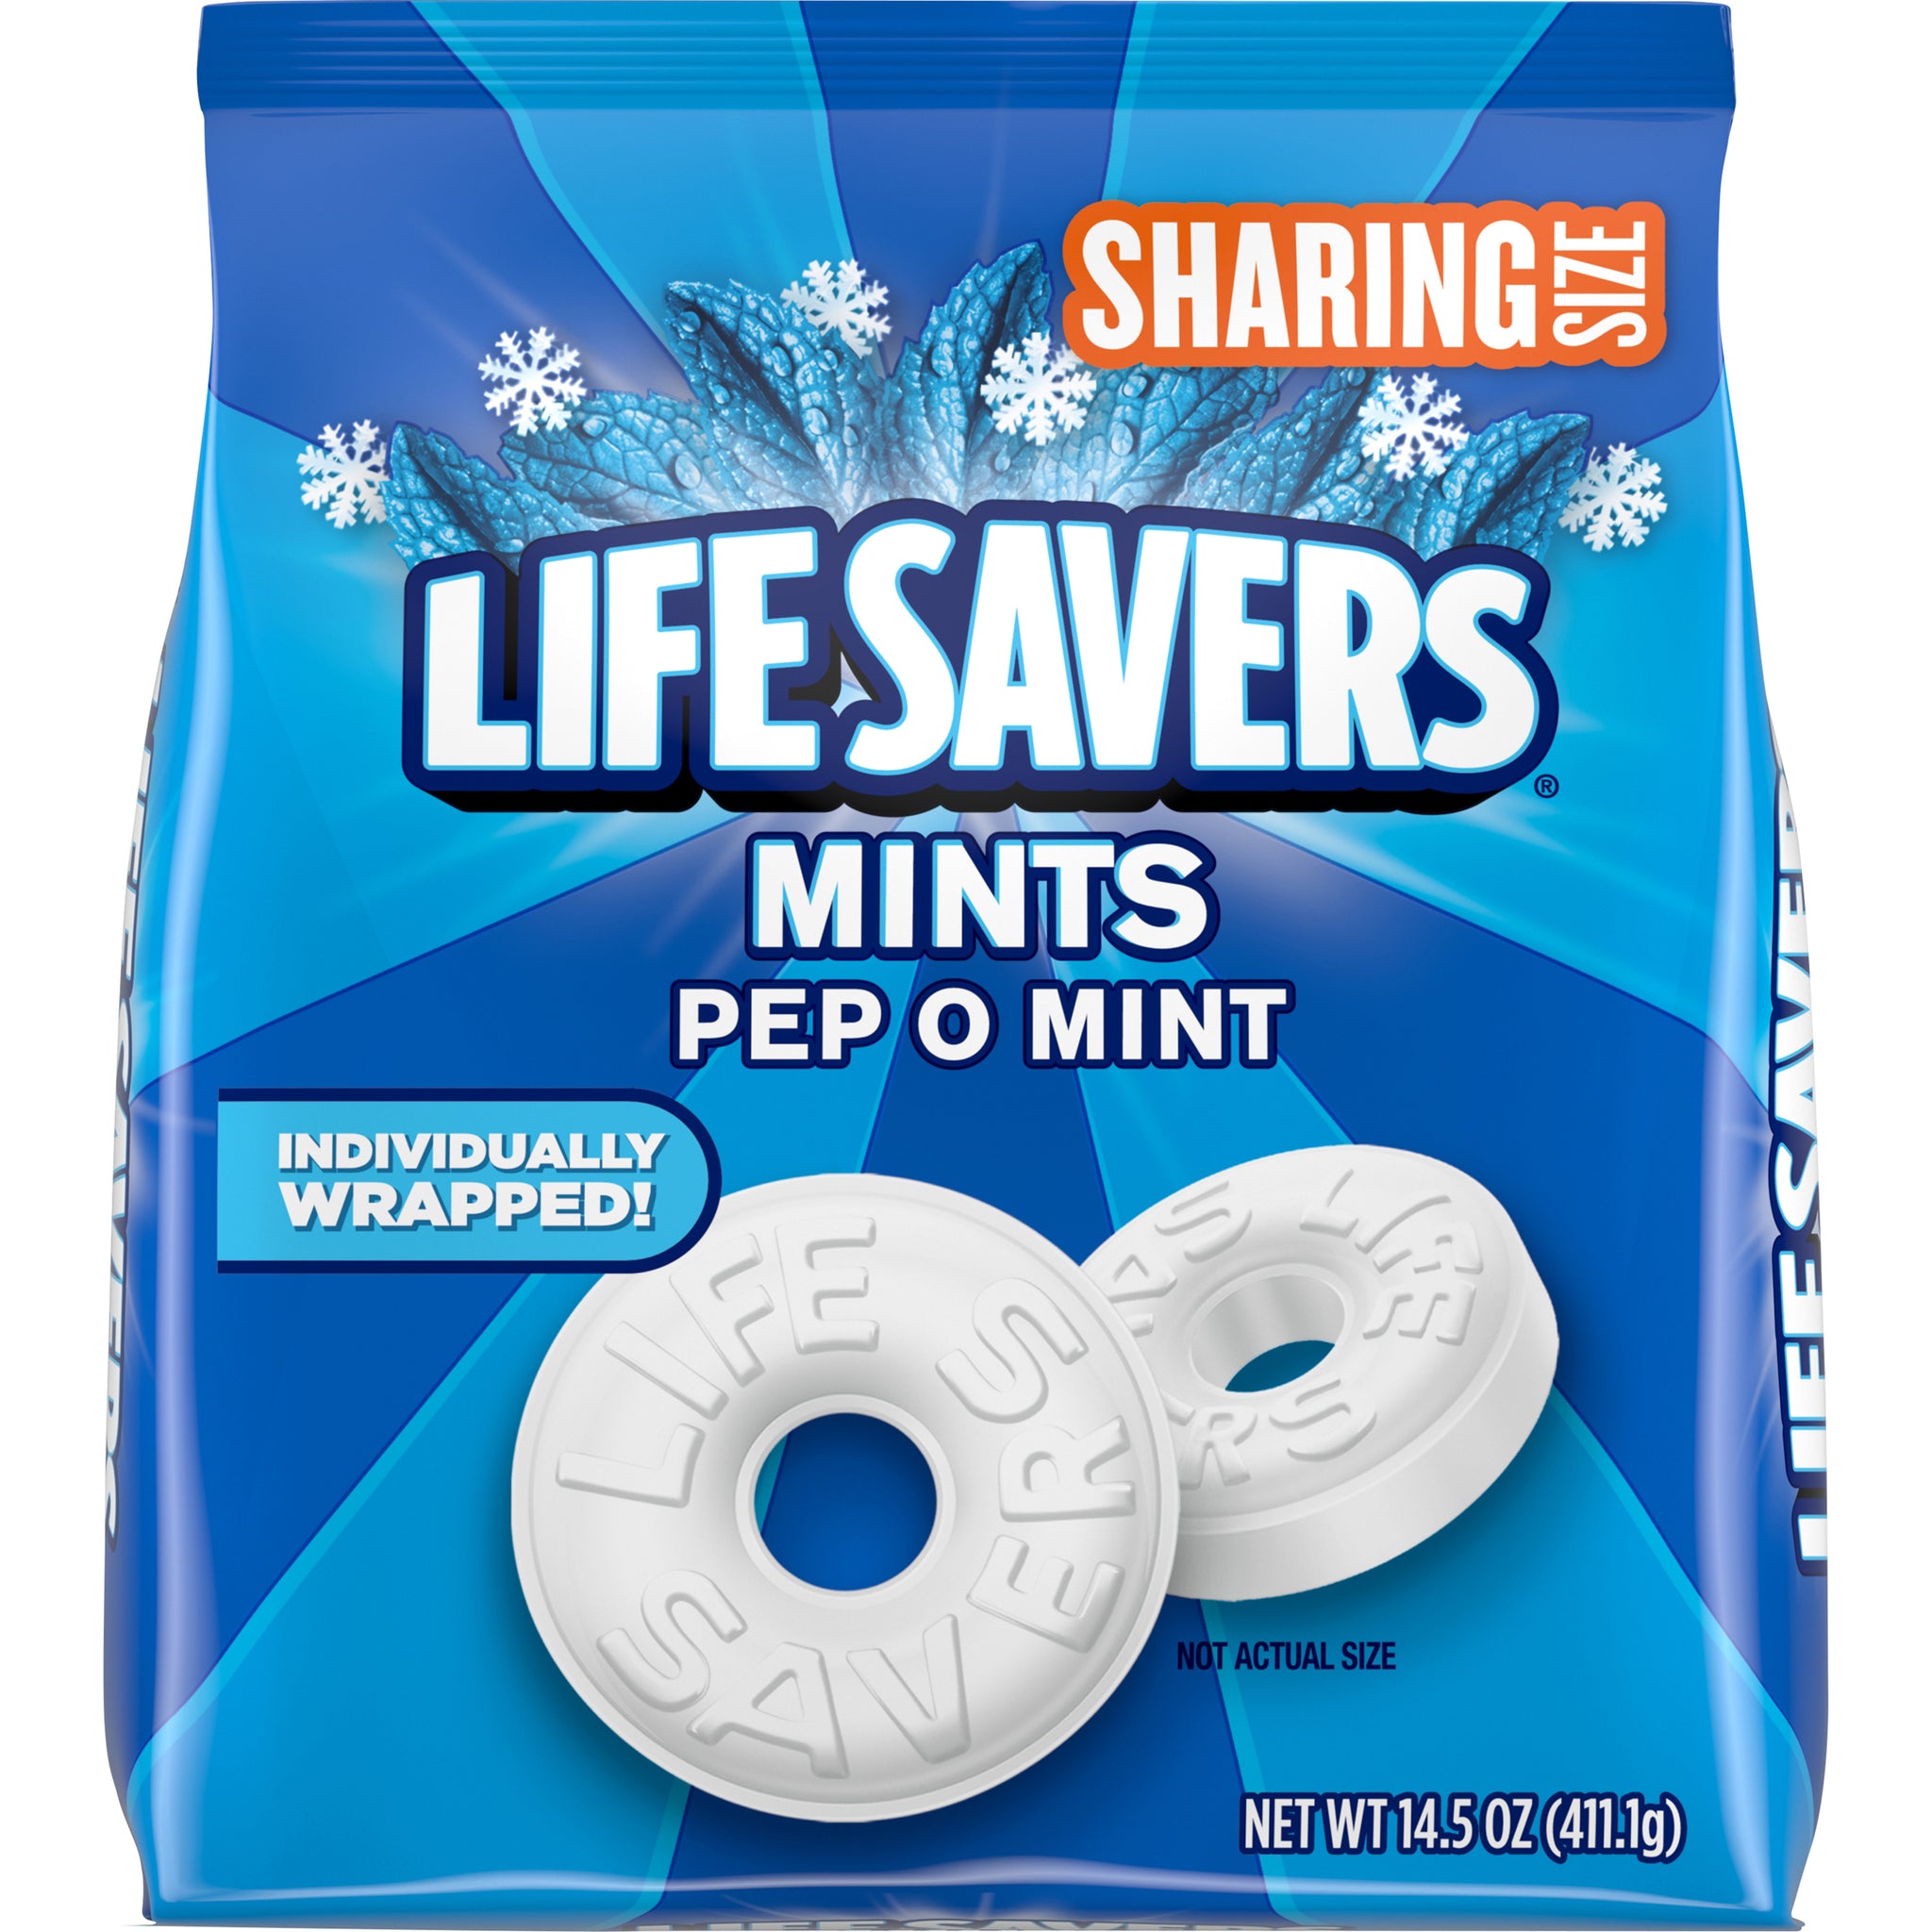 Life Savers Mints, Pep O Mint, Share Size, 14.5oz